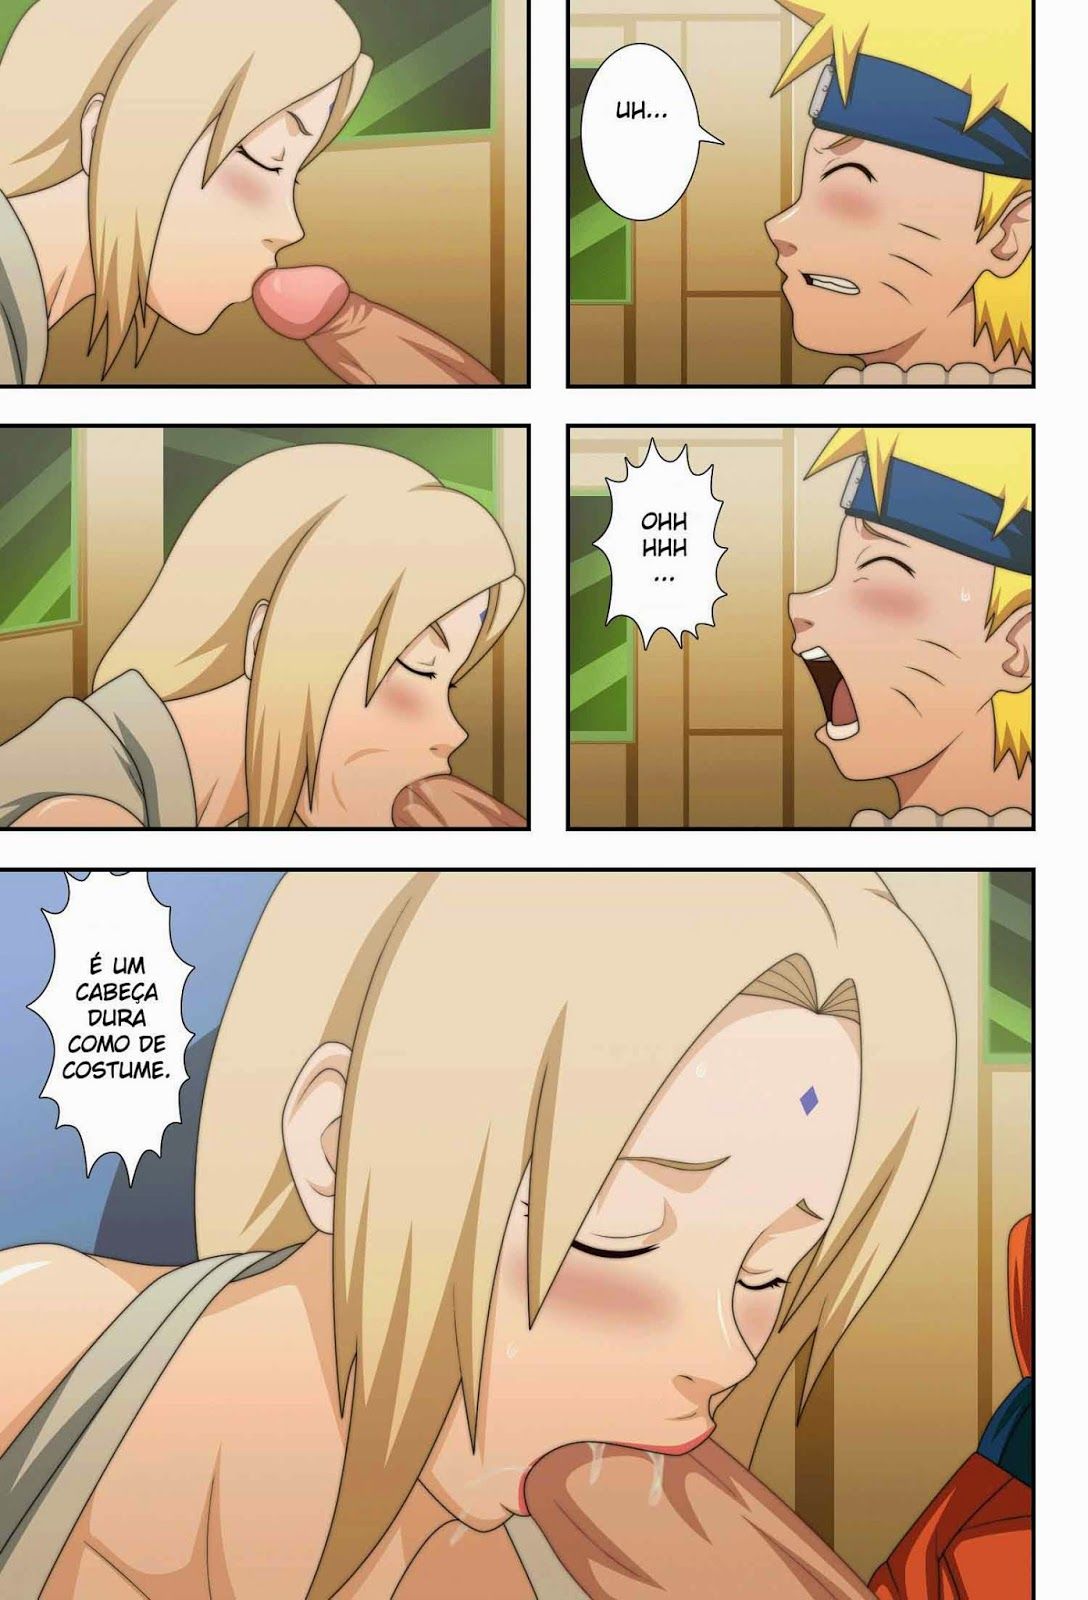 Naruto fazendo sexo com a senhora tsunade